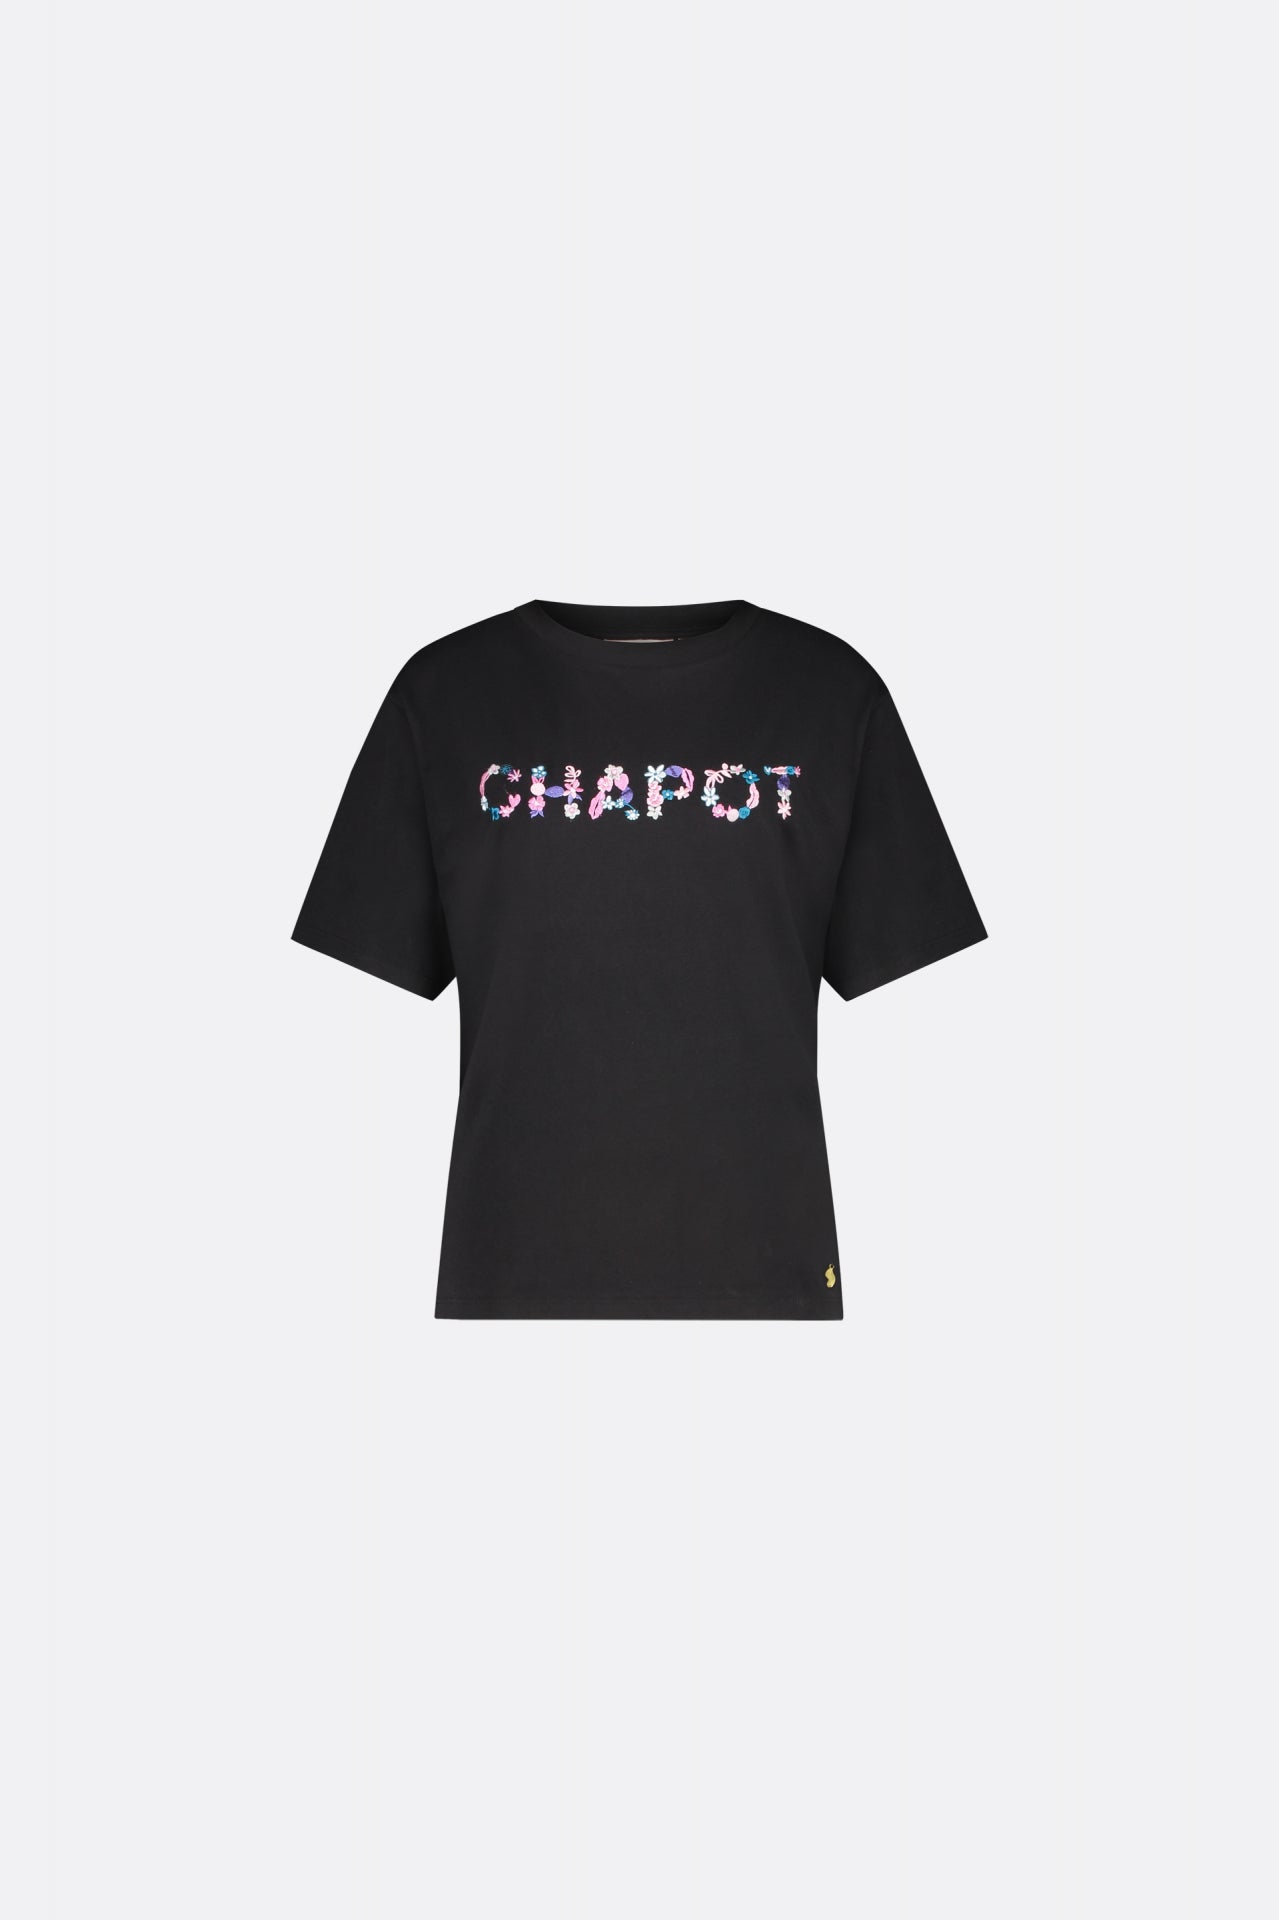 Steve Chapot T-shirt | Black